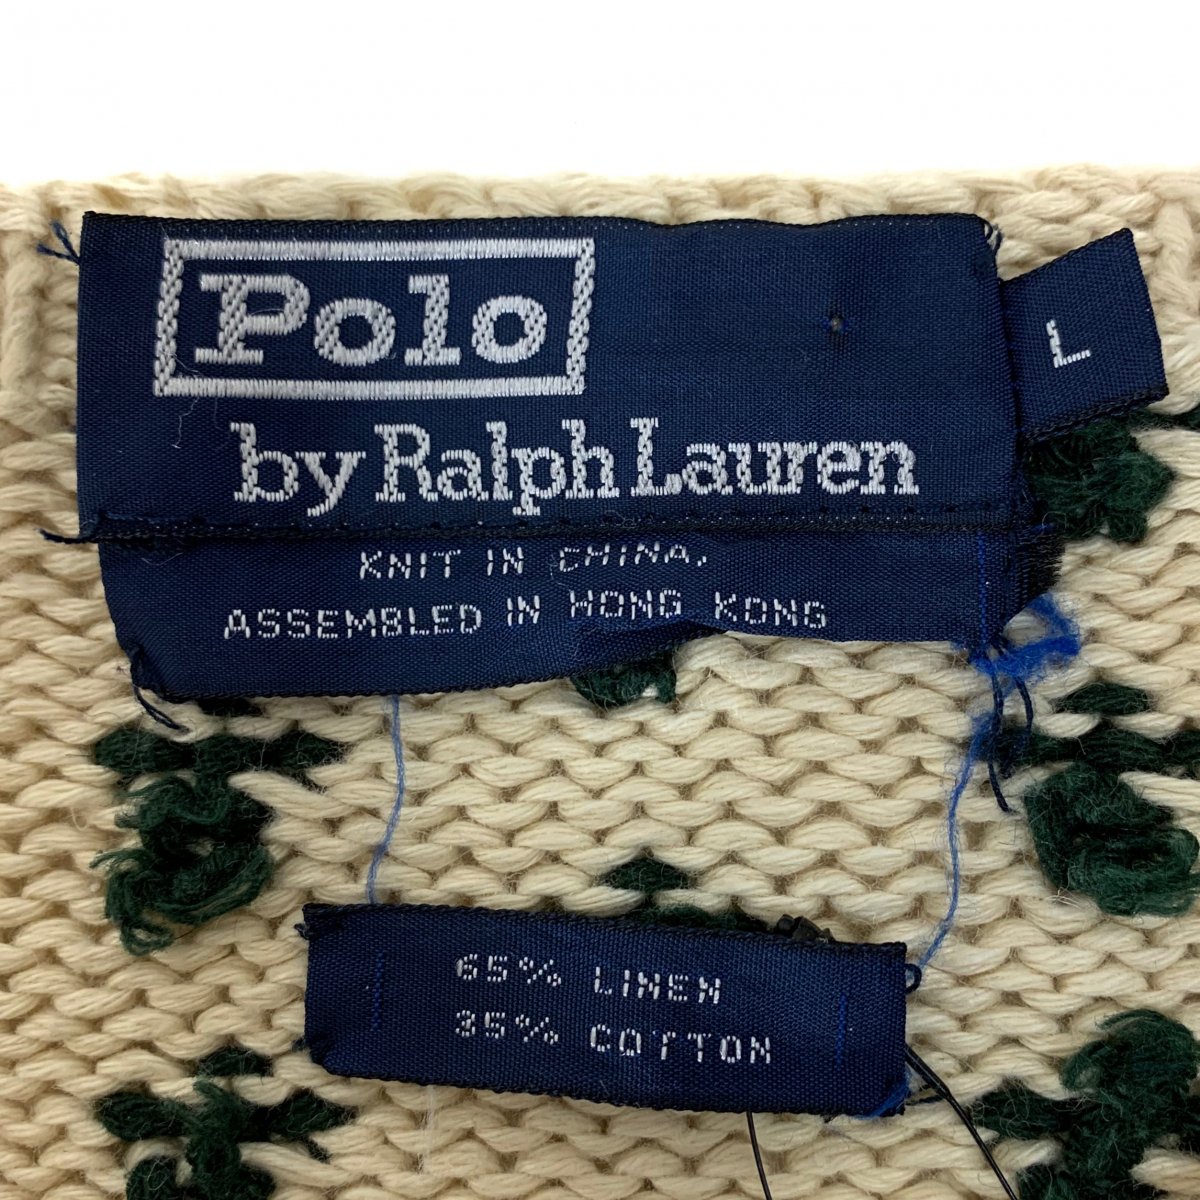 90s Polo Ralph Lauren 